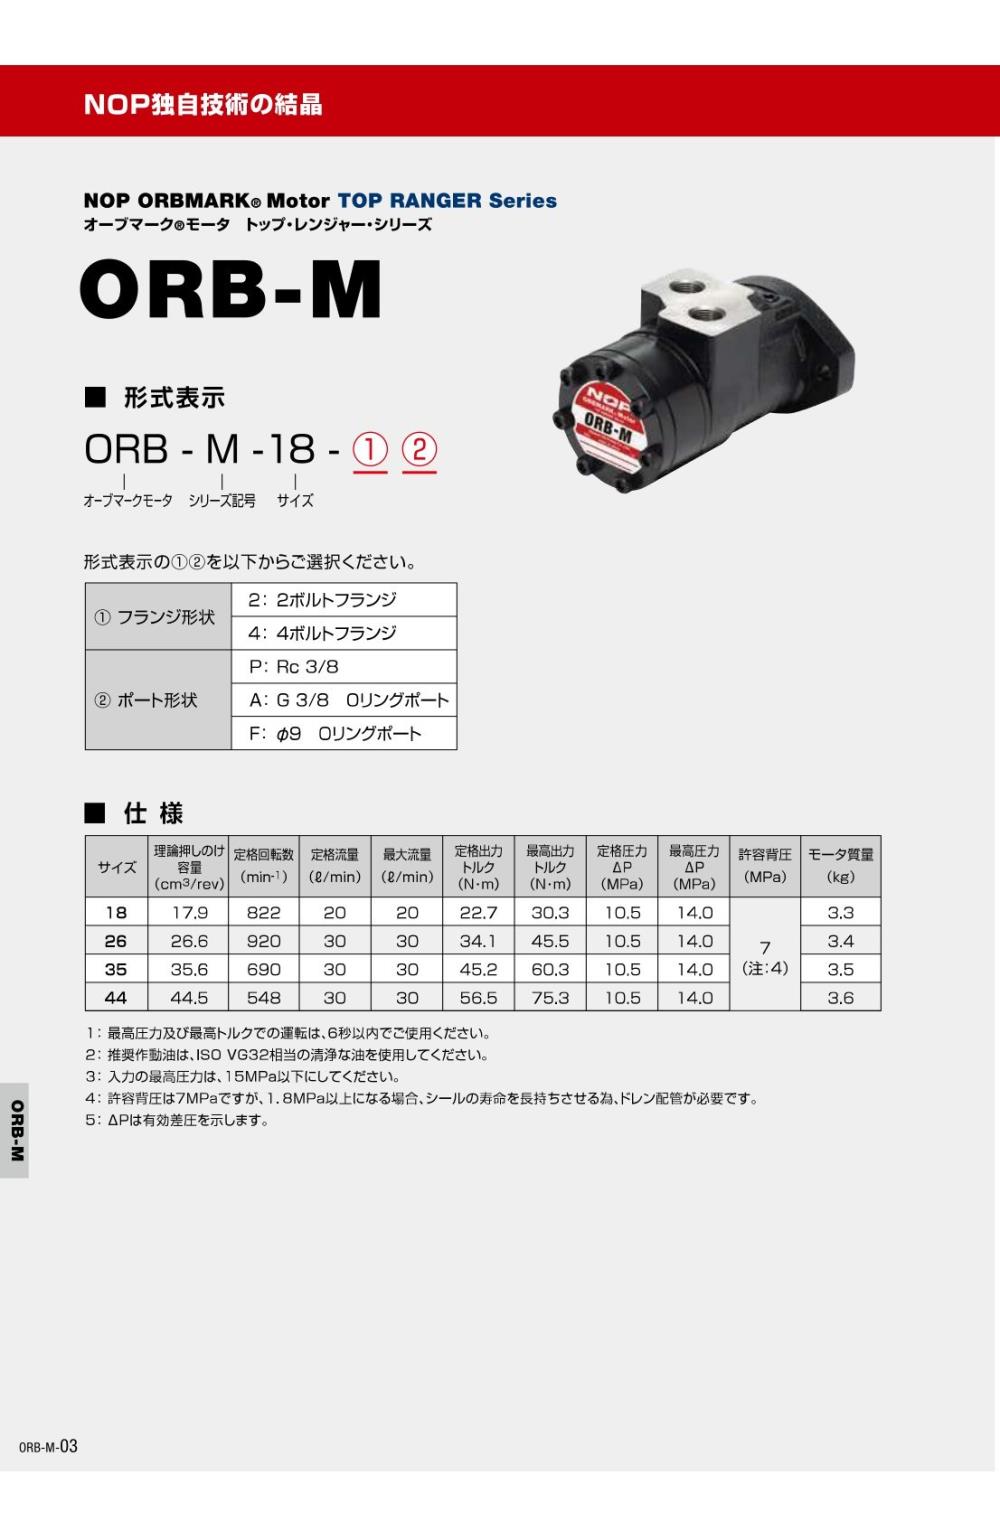 NOP ORBMARK Motor ORB-M-44 Series